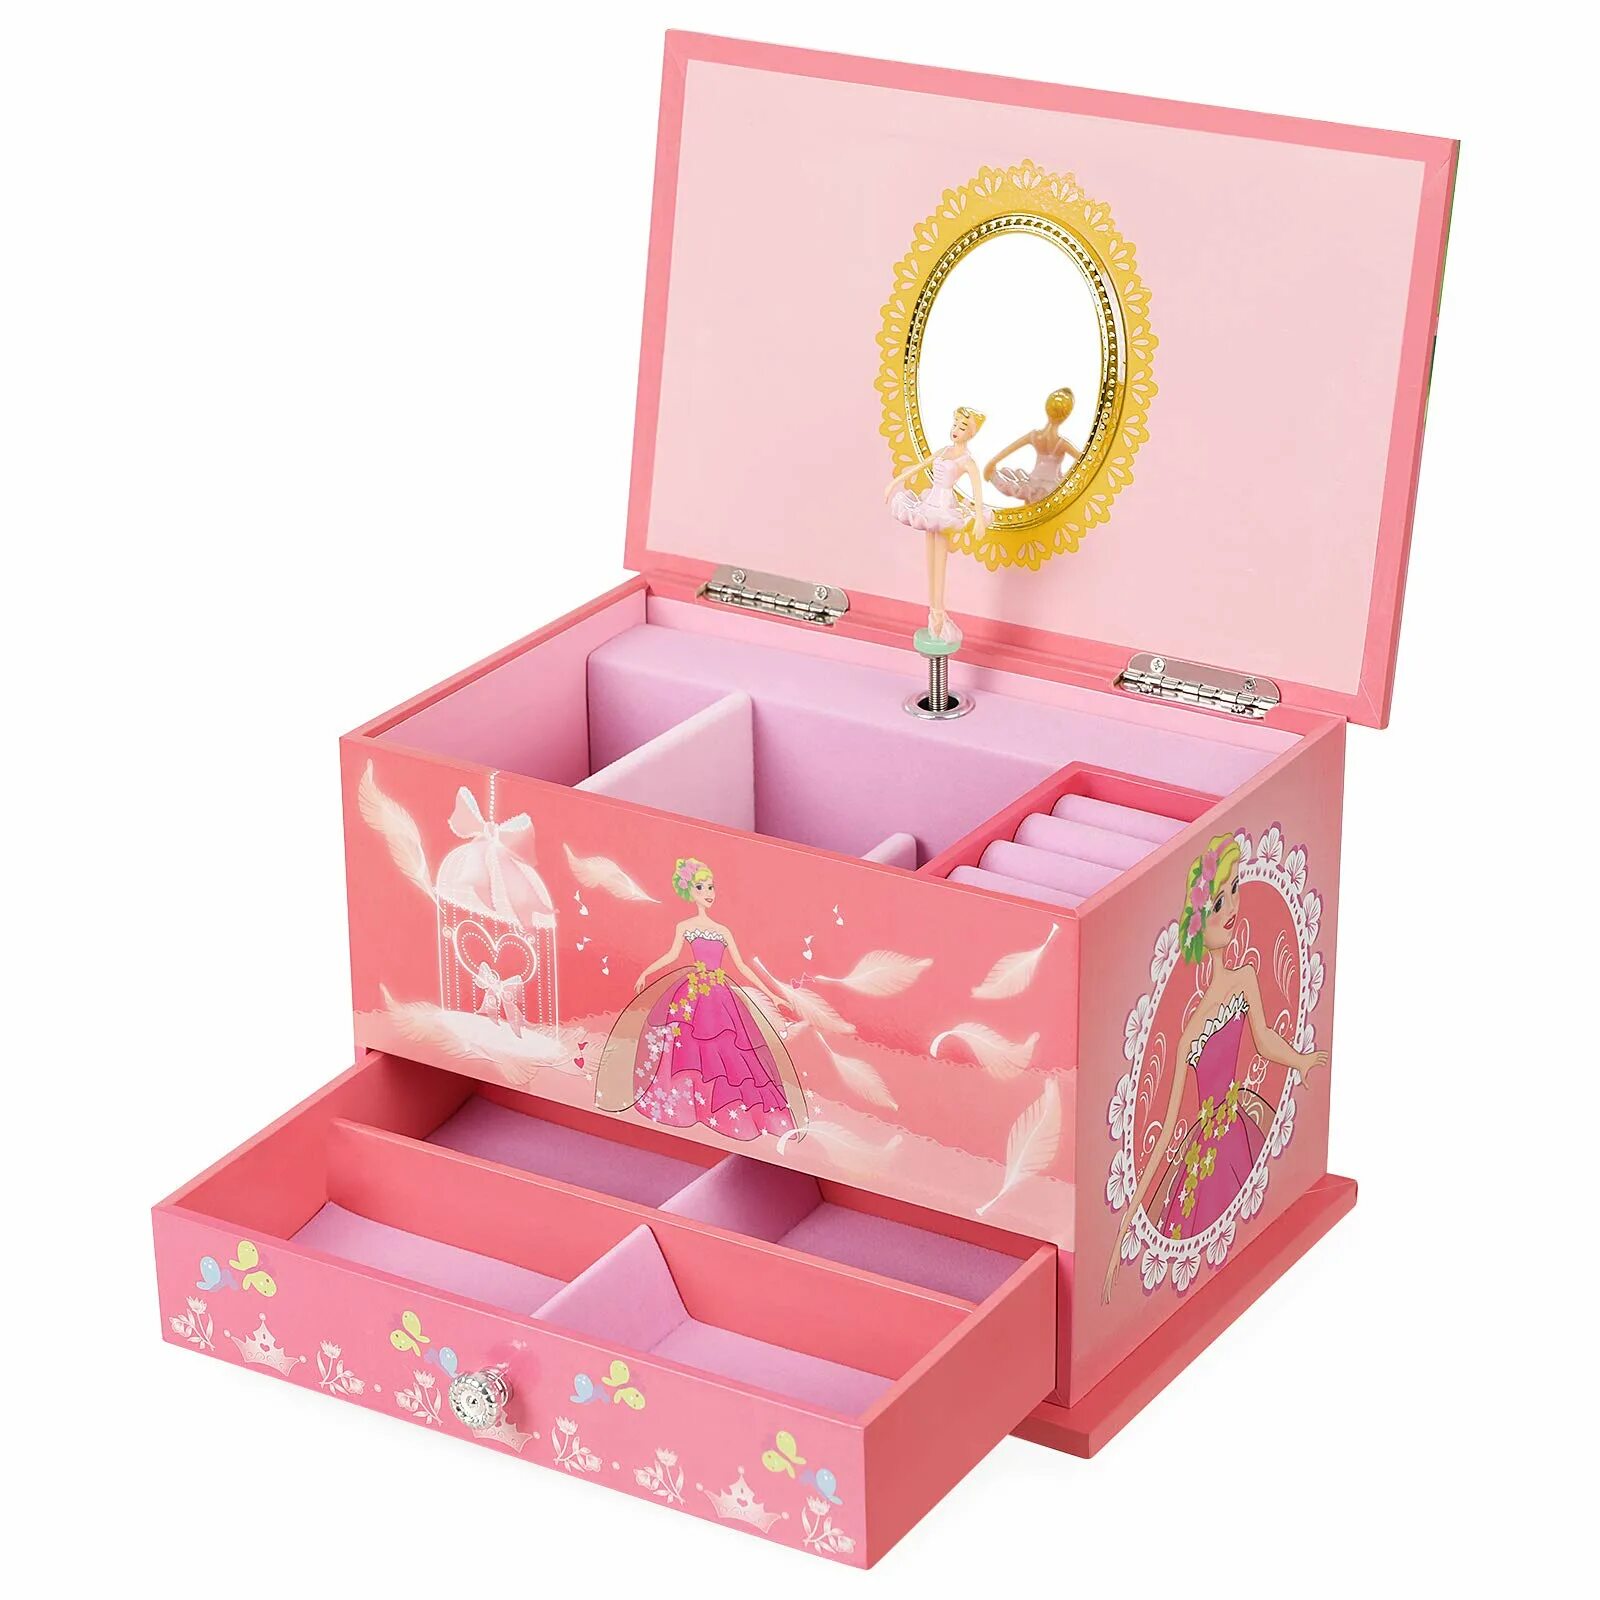 Музыкальная шкатулка сундучок Musical jewerly Box Shenzhen Toys д54155. Подарок для девочки. Подарок девочке на 7 лет. Подарок на новый год девочке. Что подарить племяннице 8 лет